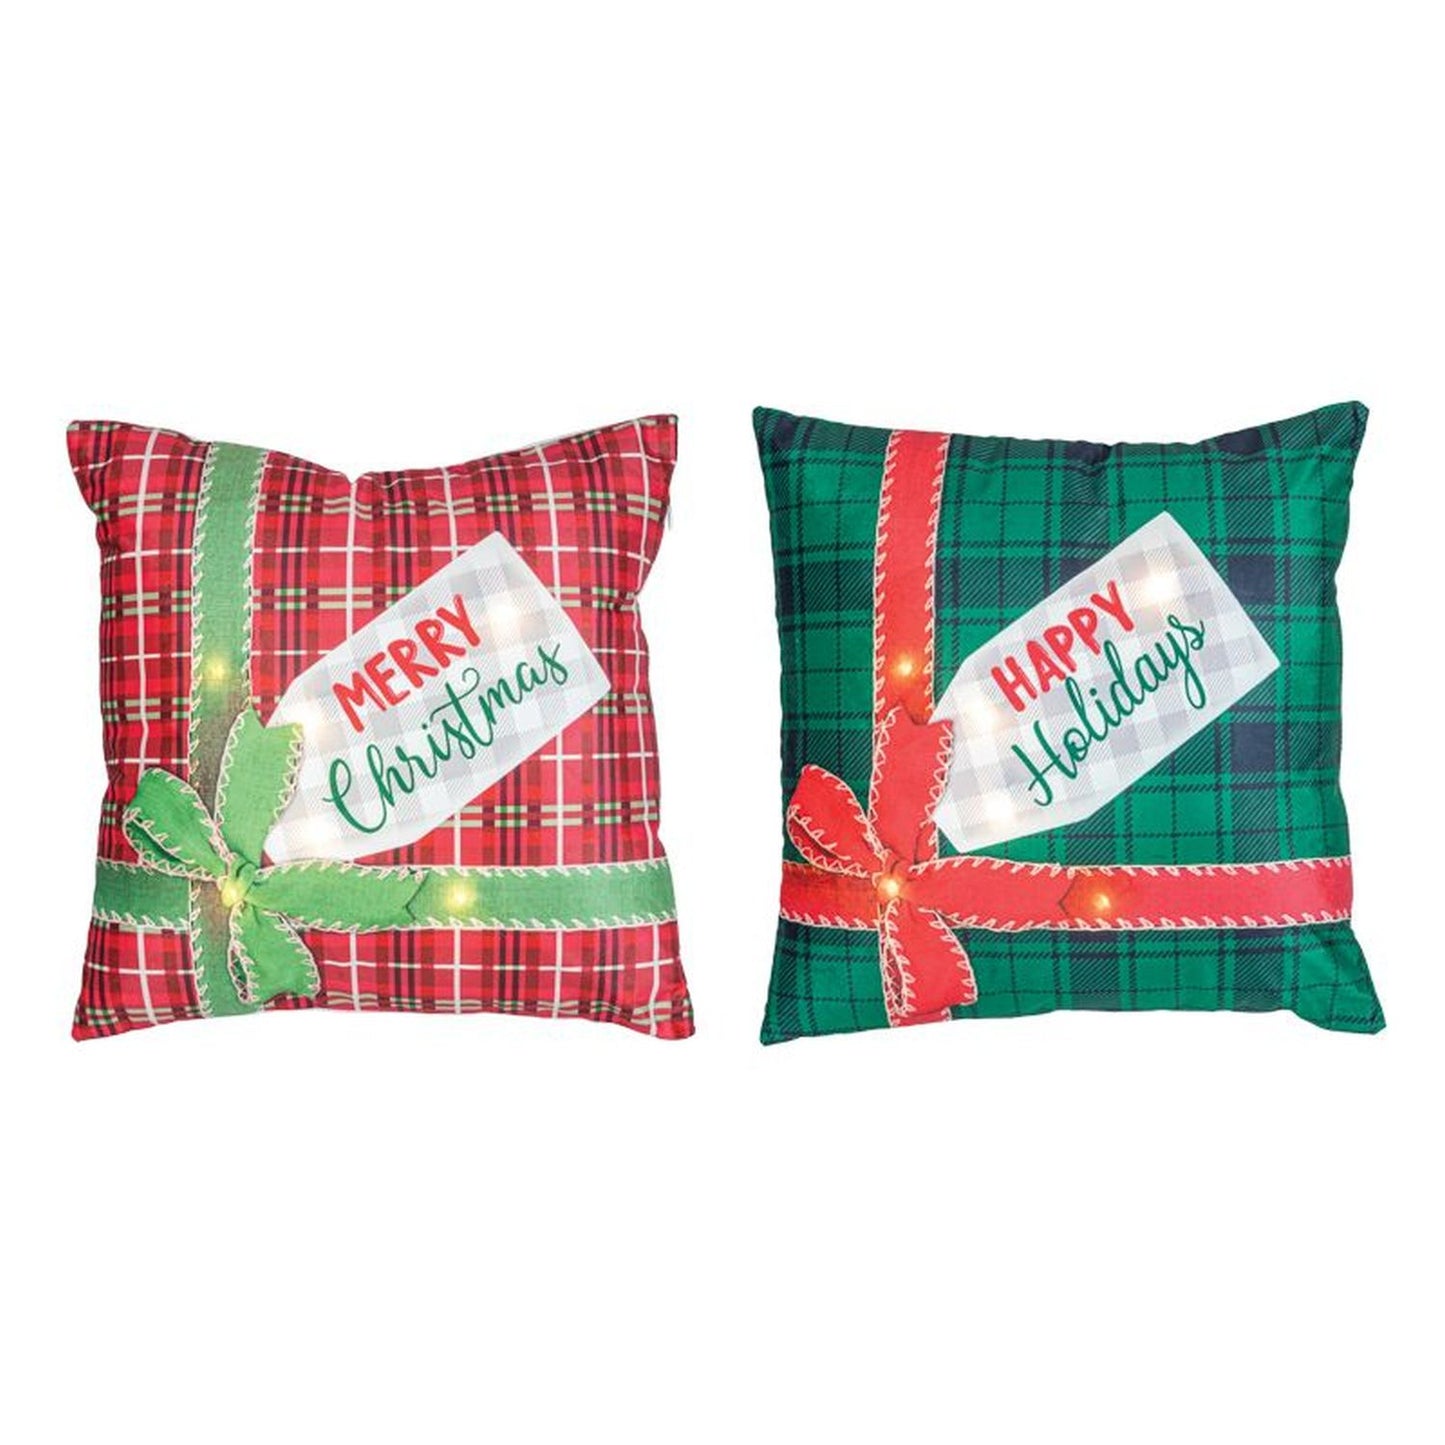 Hanna's Handiworks Christmas Gift Lighted Pillow Set Of 2 Assortment